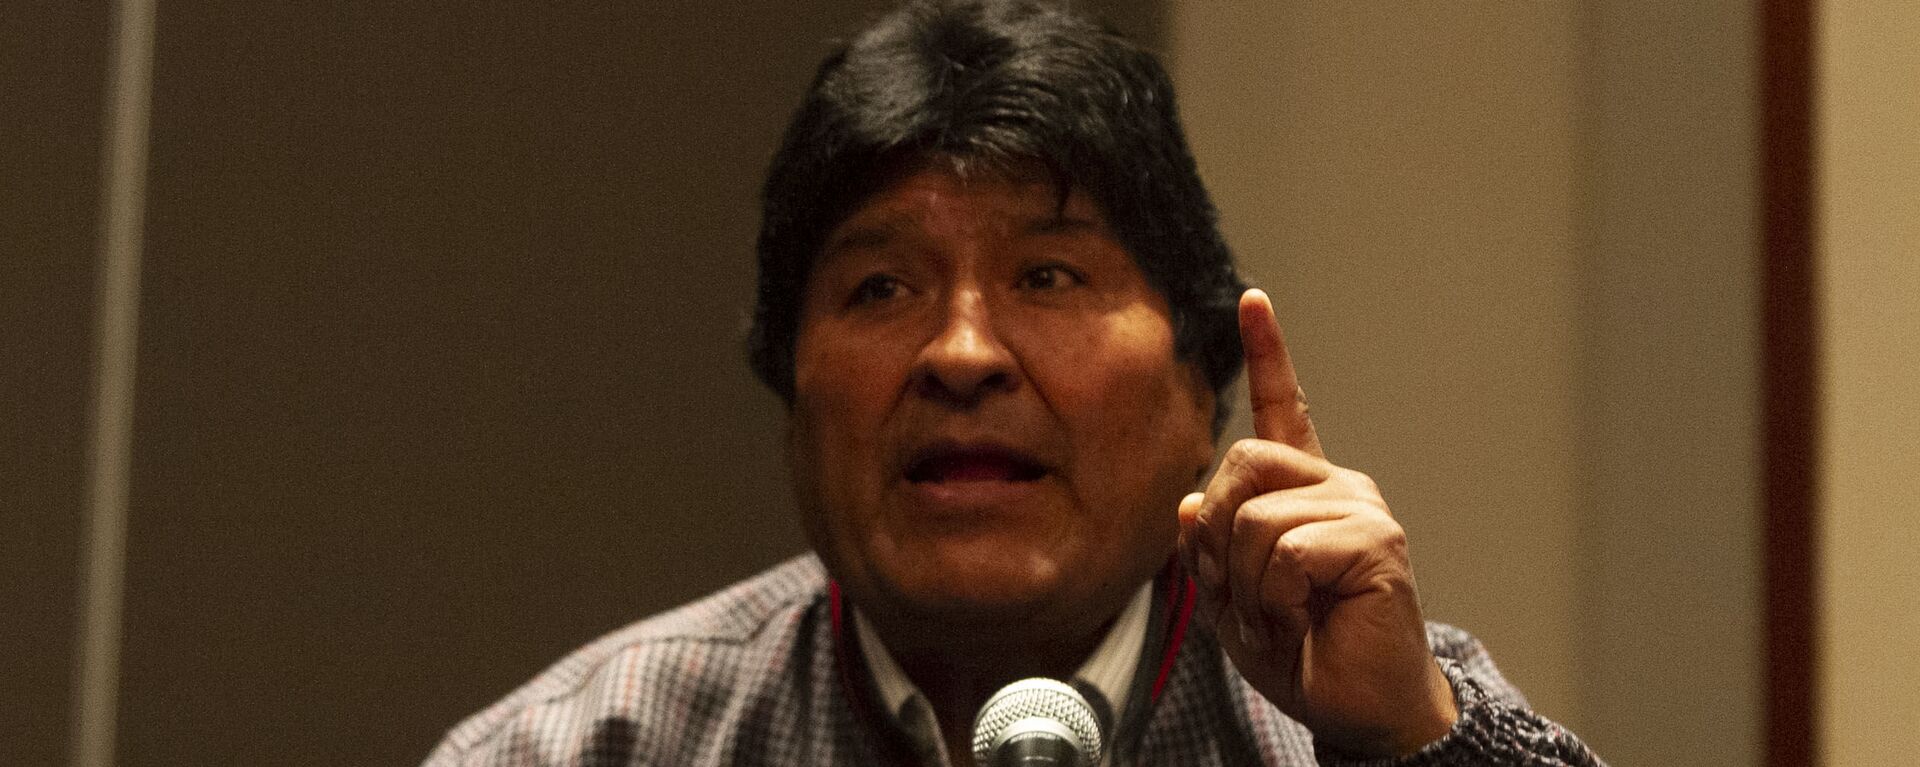 Evo Morales ofrece una rueda de prensa en la Ciudad de México, el 20 de noviembre de 2019 - Sputnik Mundo, 1920, 16.09.2021